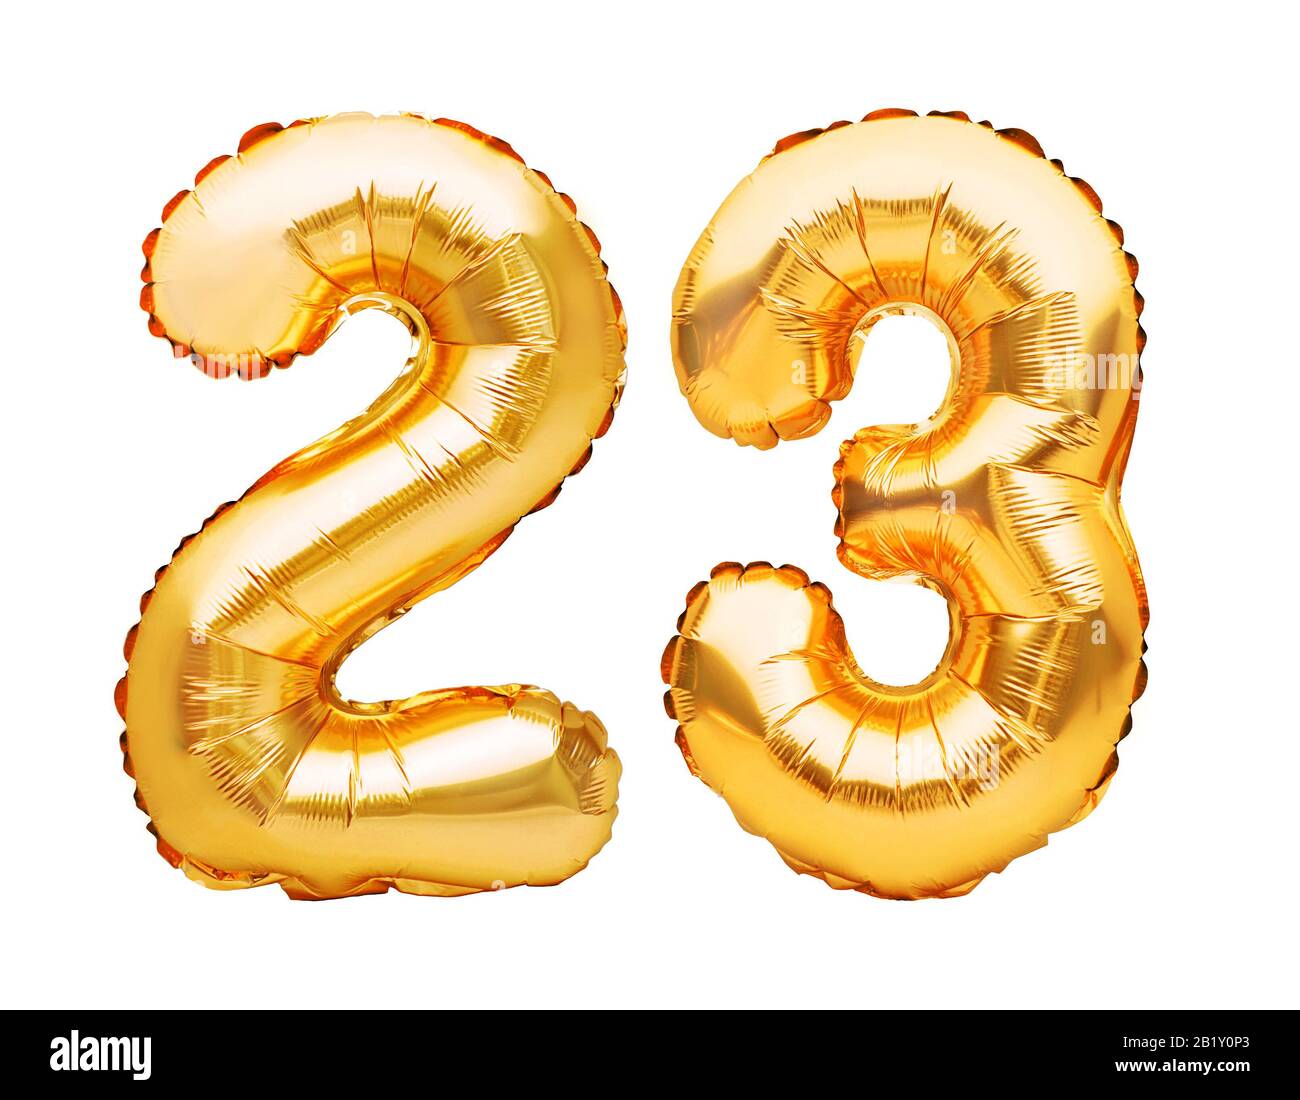 Nummer 23 dreiundzwanzig aus goldenen aufblasbaren Ballons, isoliert auf  Weiß. Heliumballons, Goldfolienummern. Partydekoration, Jubiläumszeichen fo  Stockfotografie - Alamy